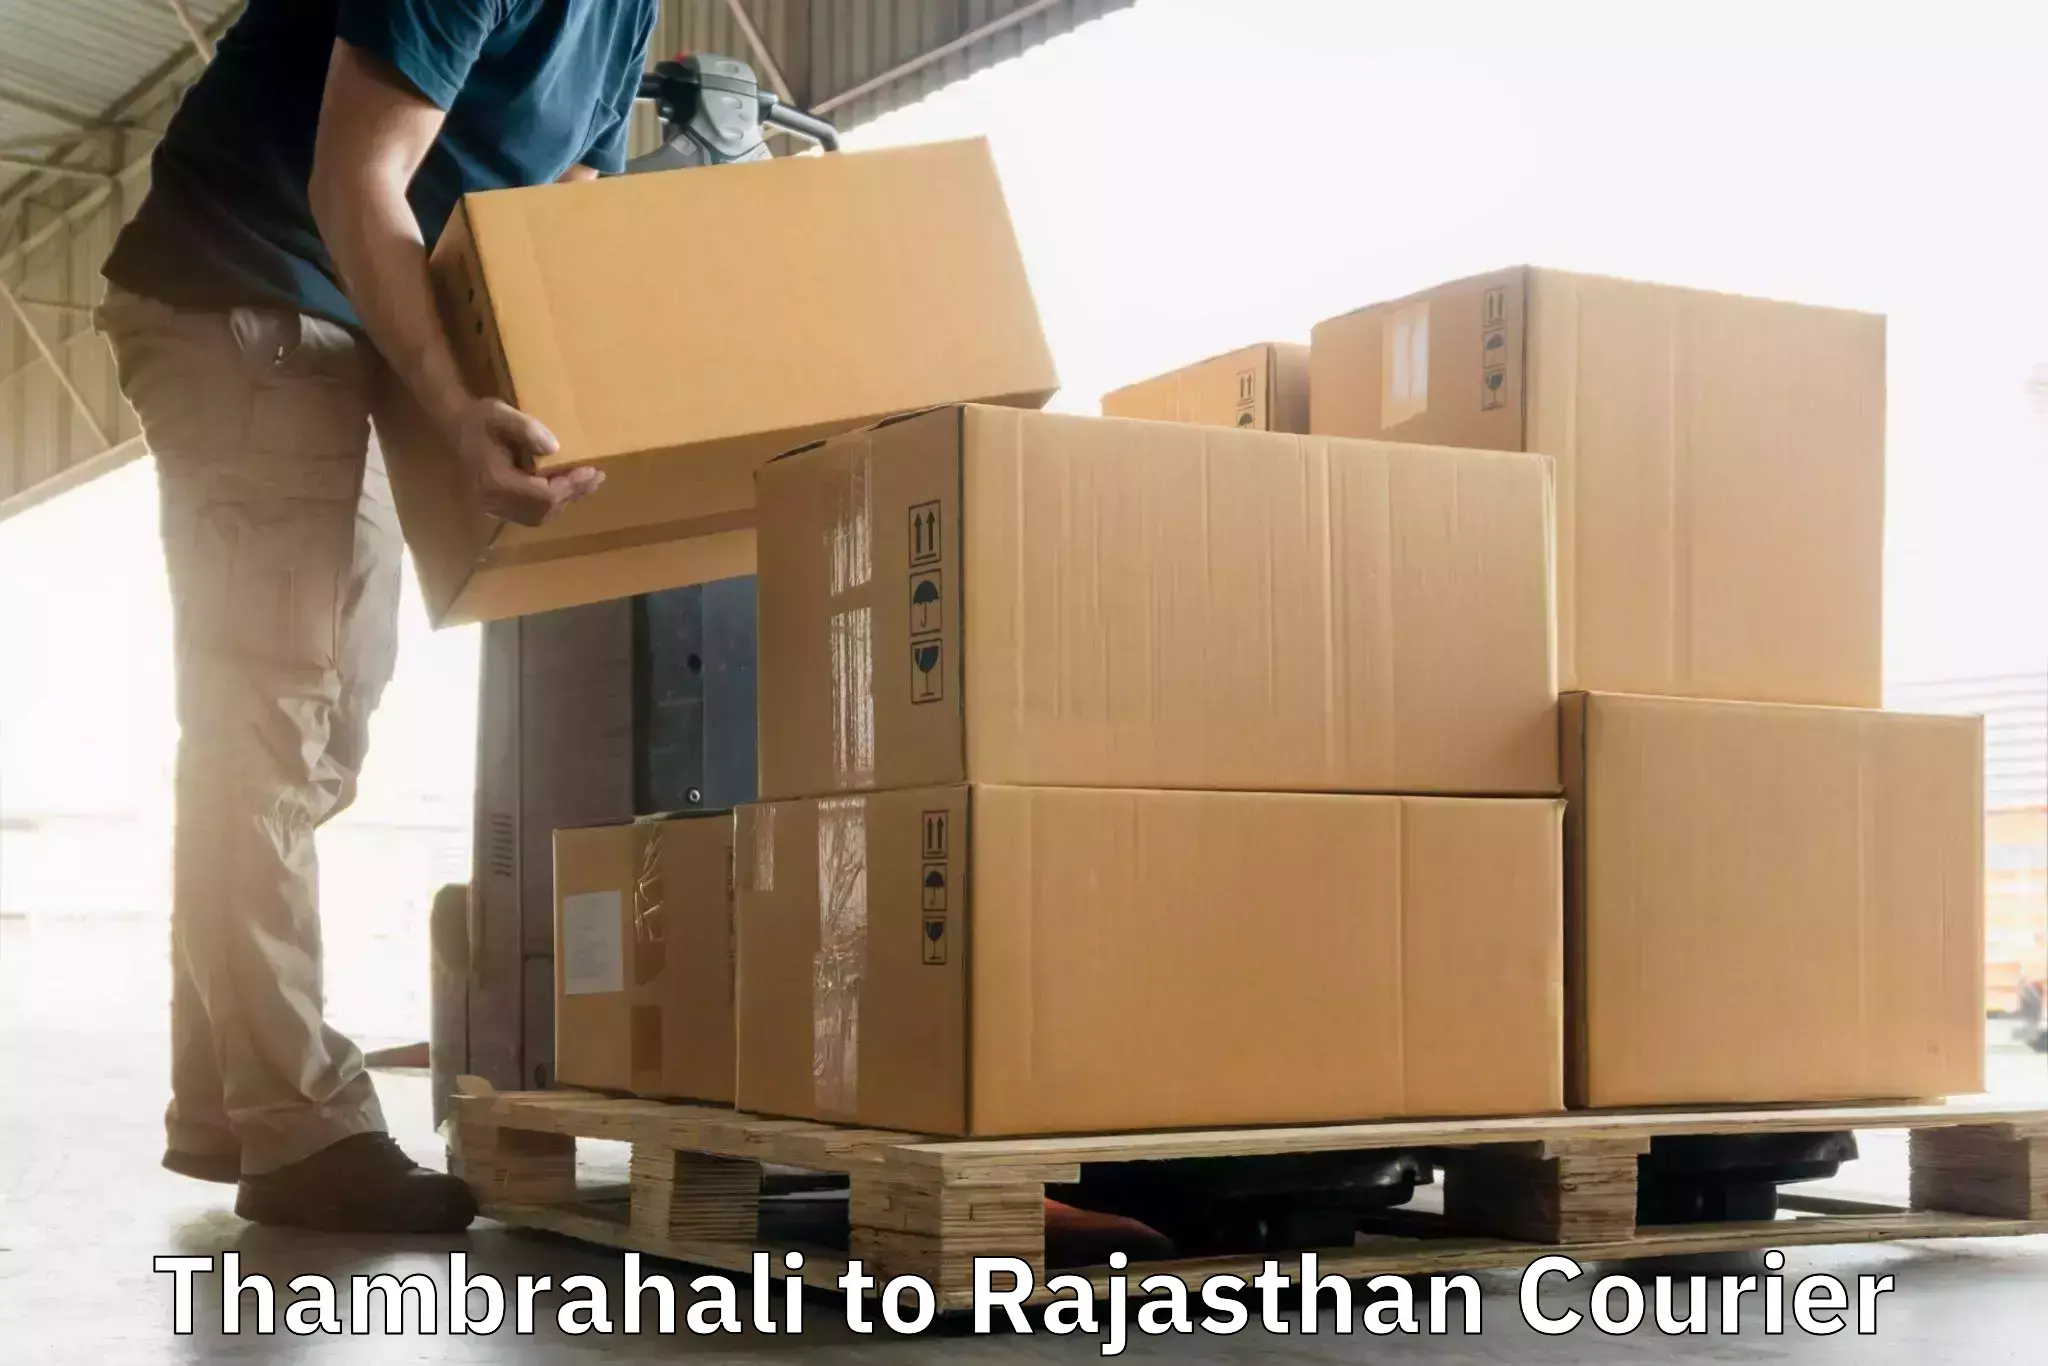 Global shipping solutions Thambrahali to Nainwa